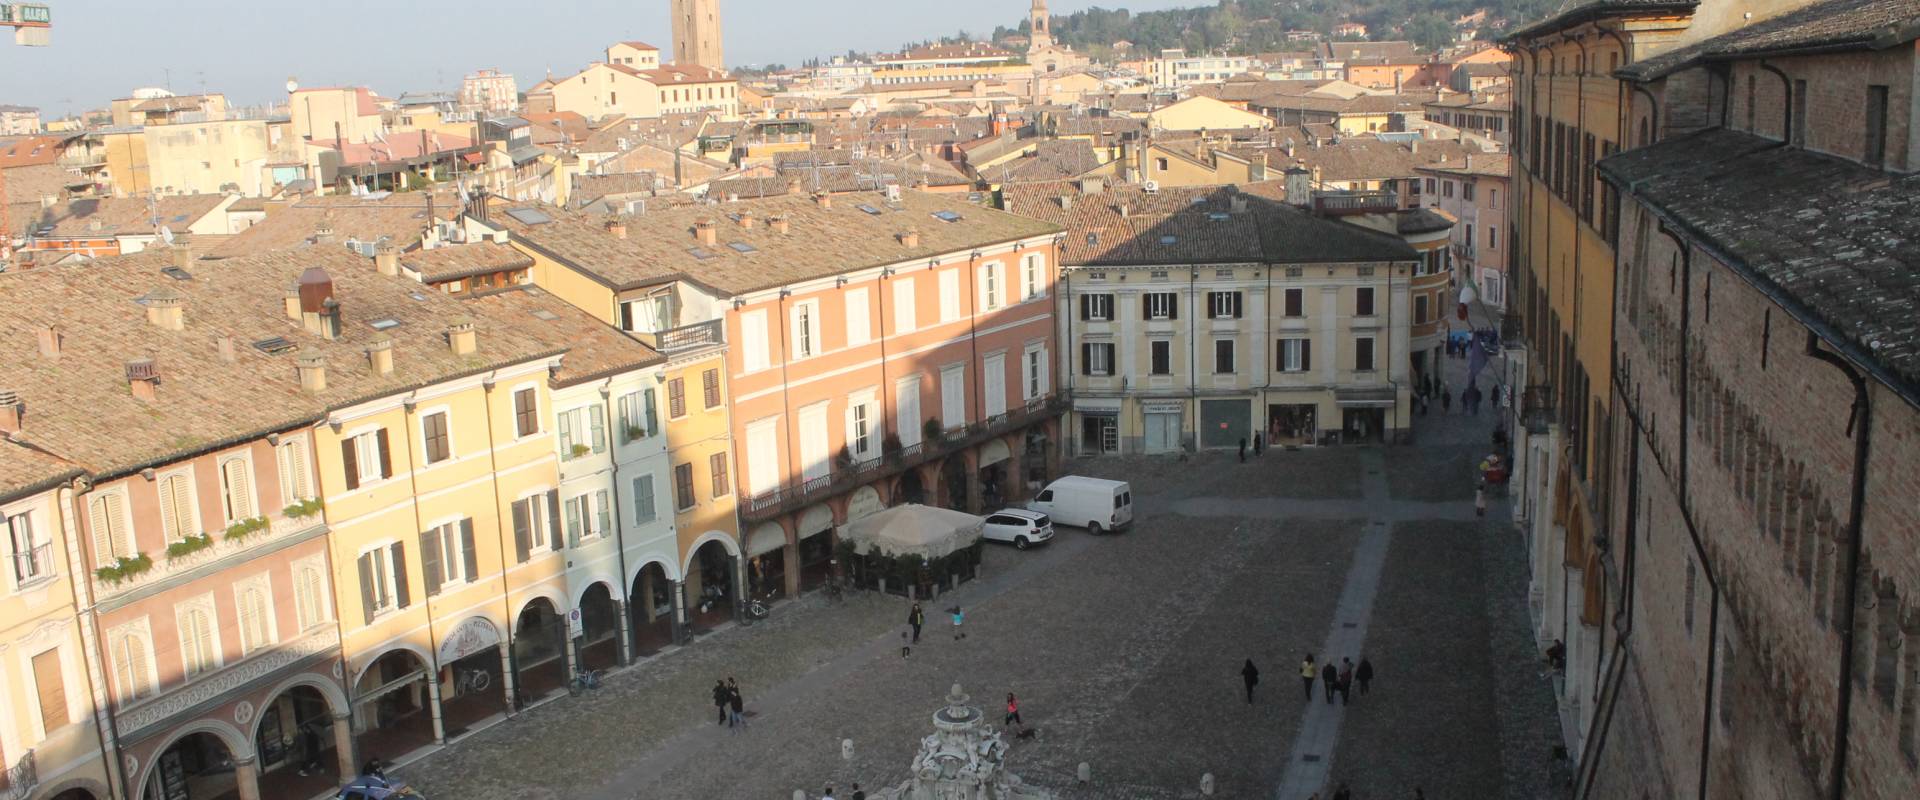 Piazza del popolo Cesena dall'alto foto di Samuele Gregori